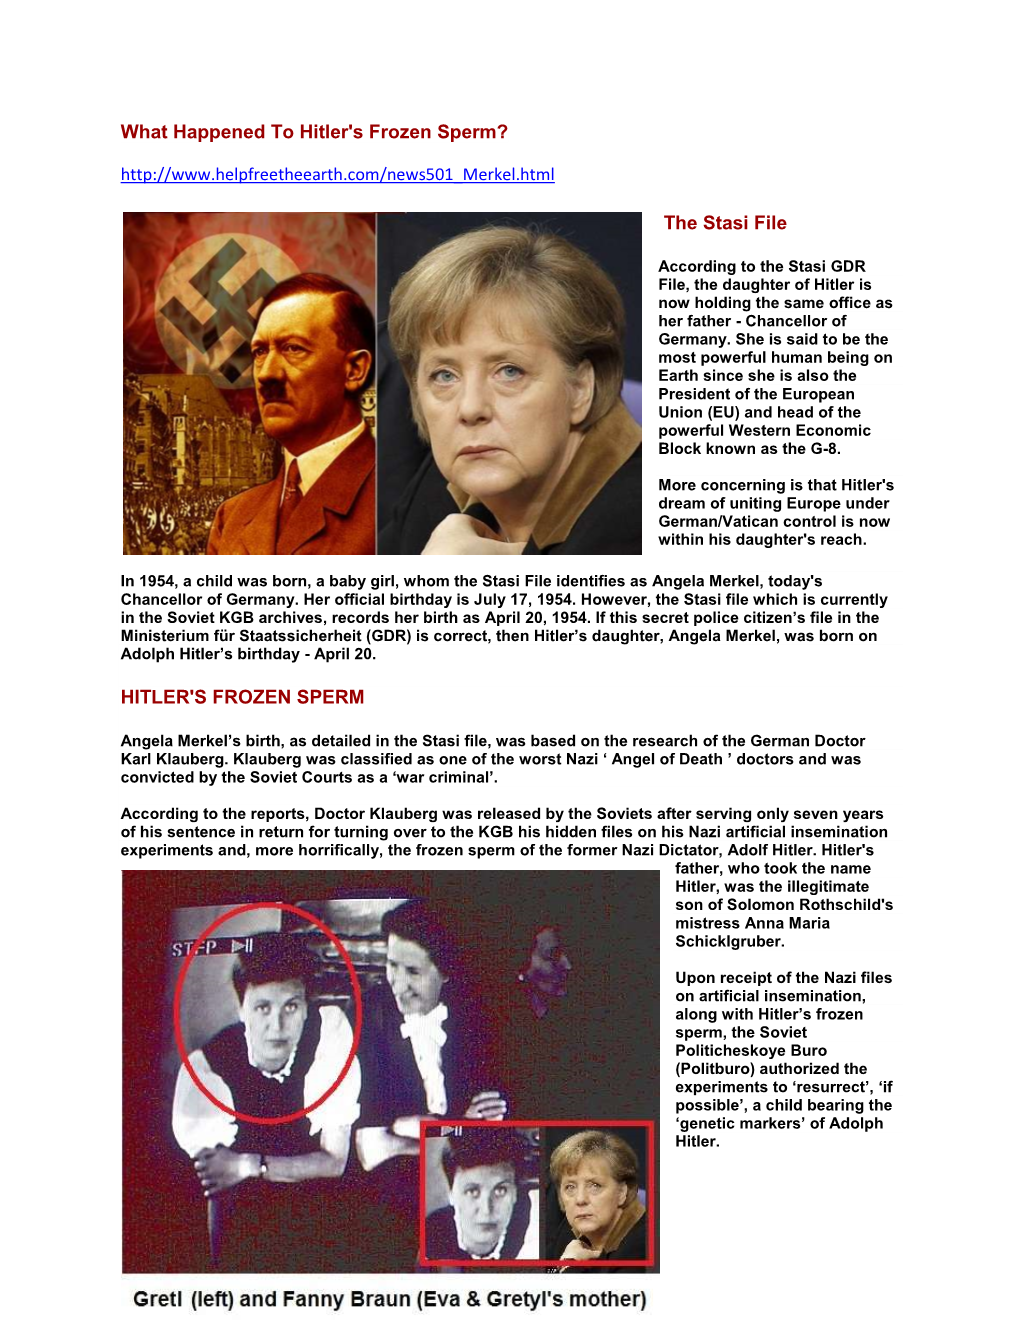 What Happened to Hitler's Frozen Sperm? the Stasi File HITLER's